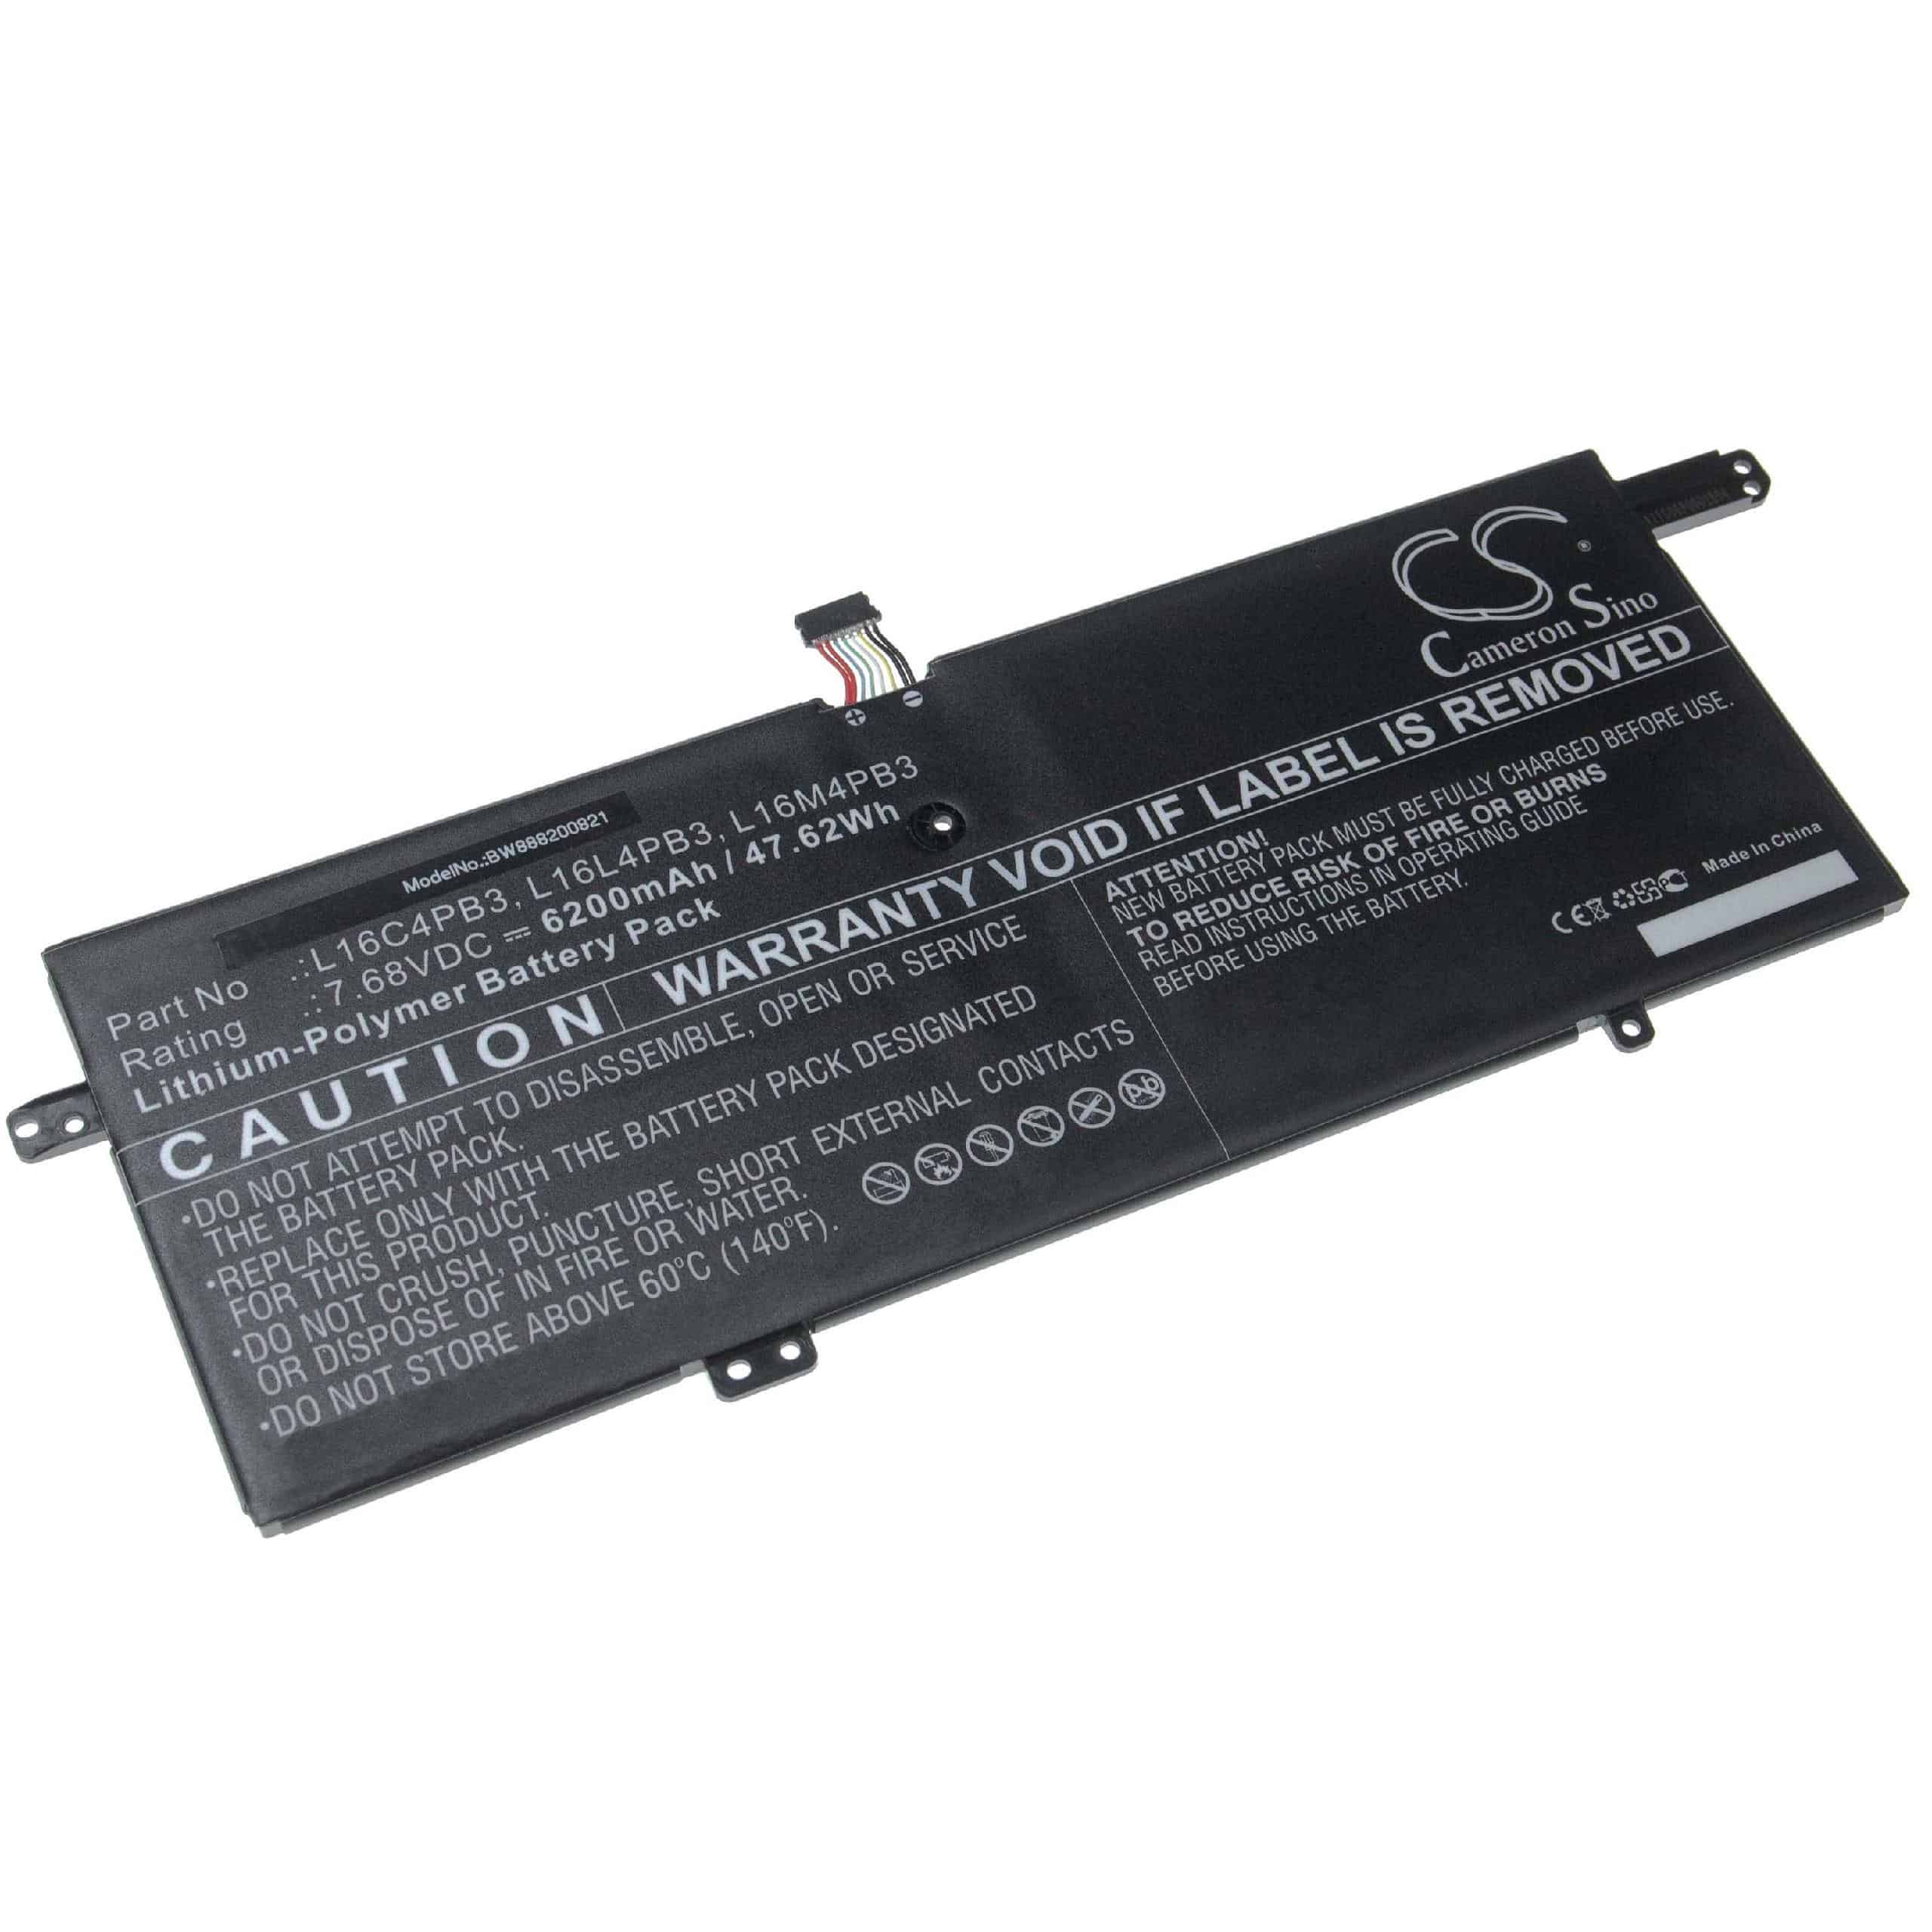 Batterie remplace Lenovo L16L4PB3, L16C4PB3 pour ordinateur portable - 6200mAh 7,68V Li-polymère, noir